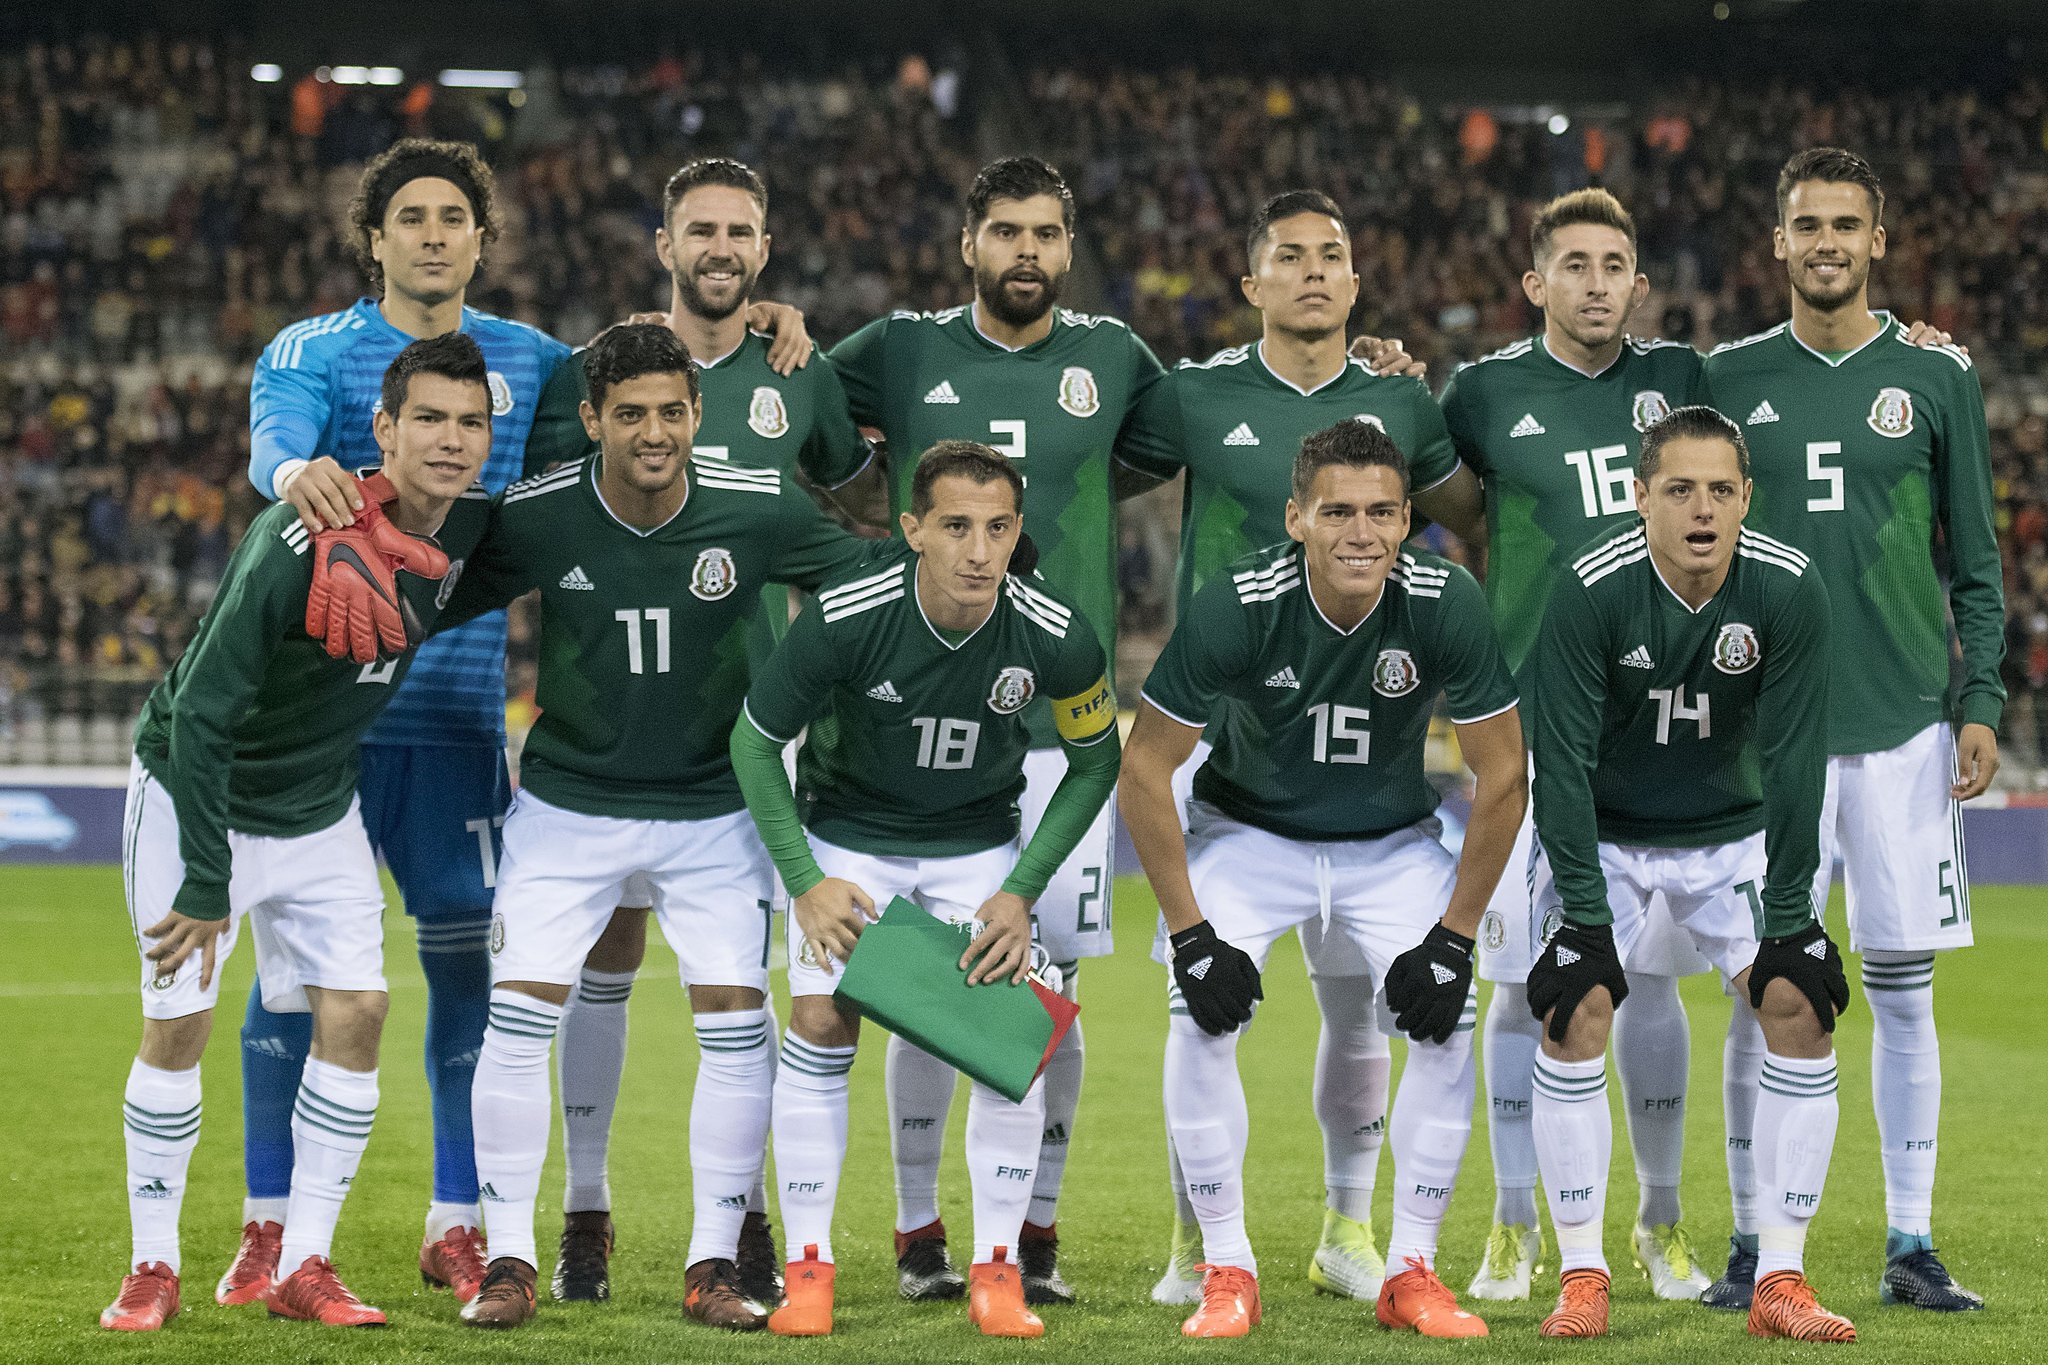 Alex Futbol on Twitter: "La Selección Mexicana jugará partido amistoso contra Gales el próximo 28 de mayo en el Rodeo Bowl de los Ángeles # seleccionmexicana #gales https://t.co/1ap8kI585w" Twitter